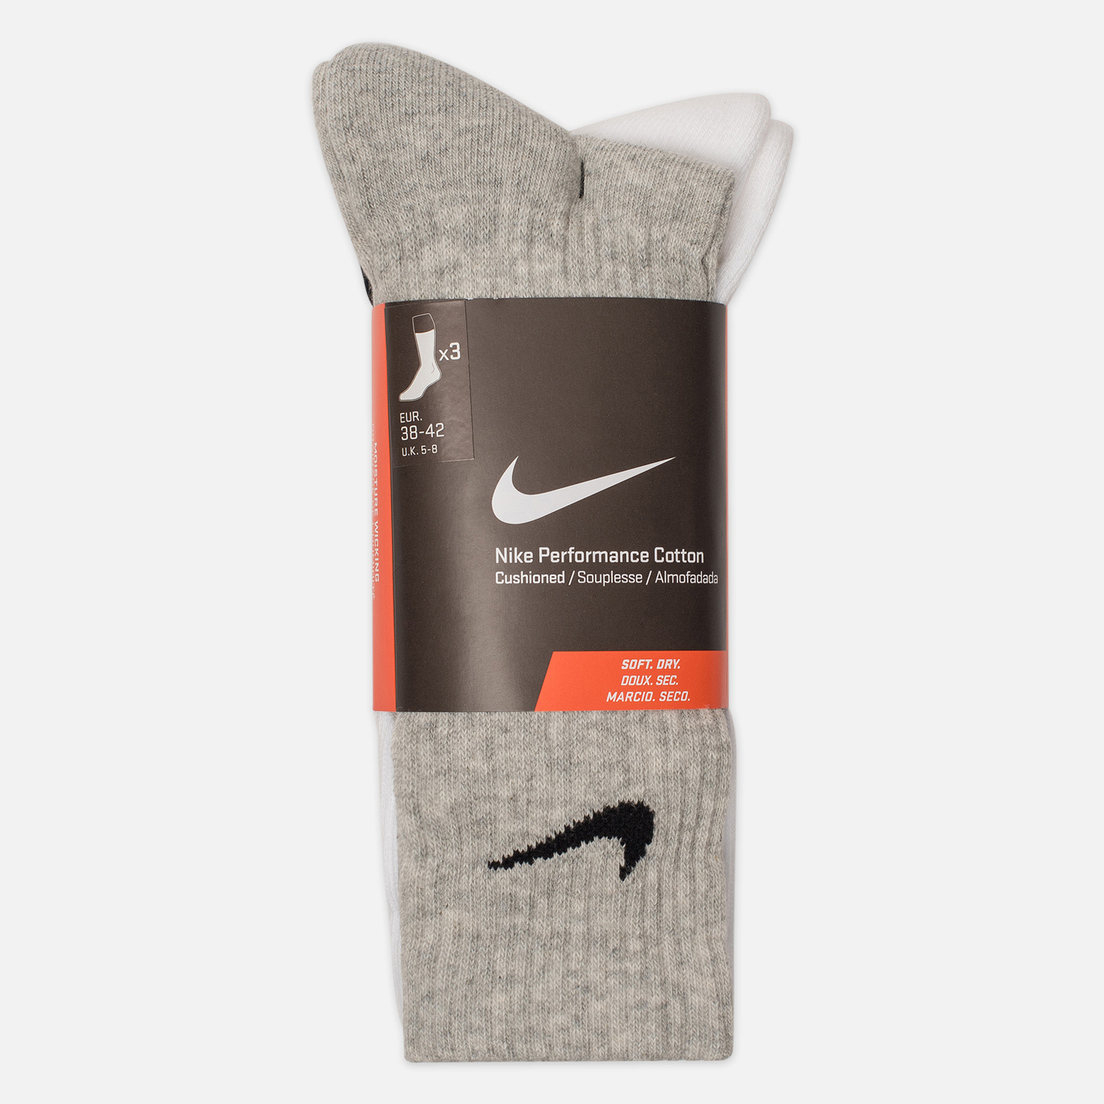 Nike Комплект носков 3-Pack Cushion Crew